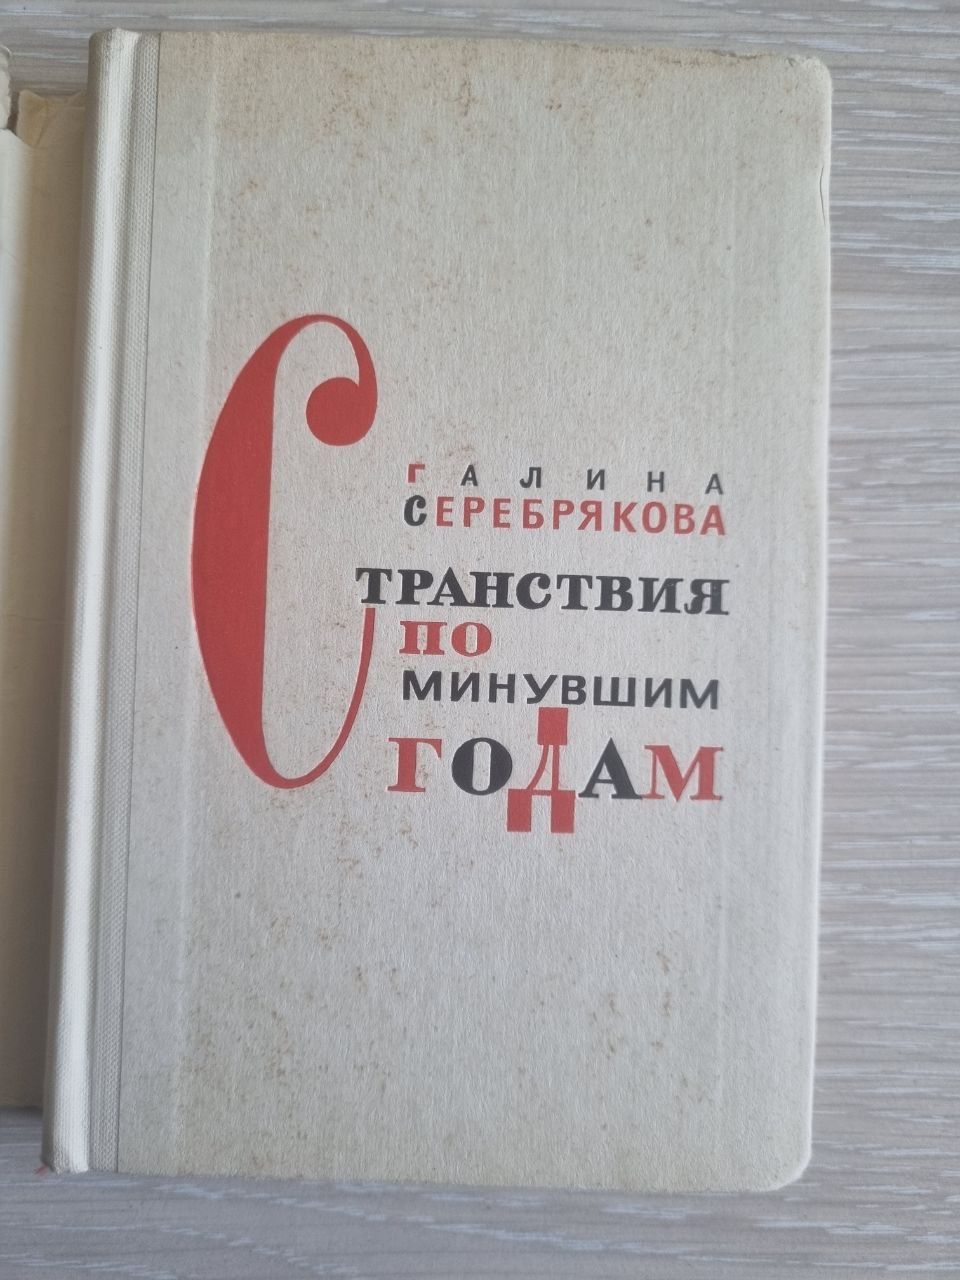 Книга "Странствия по минувшим годам" Г.Серебрякова. СССР 1965 г.